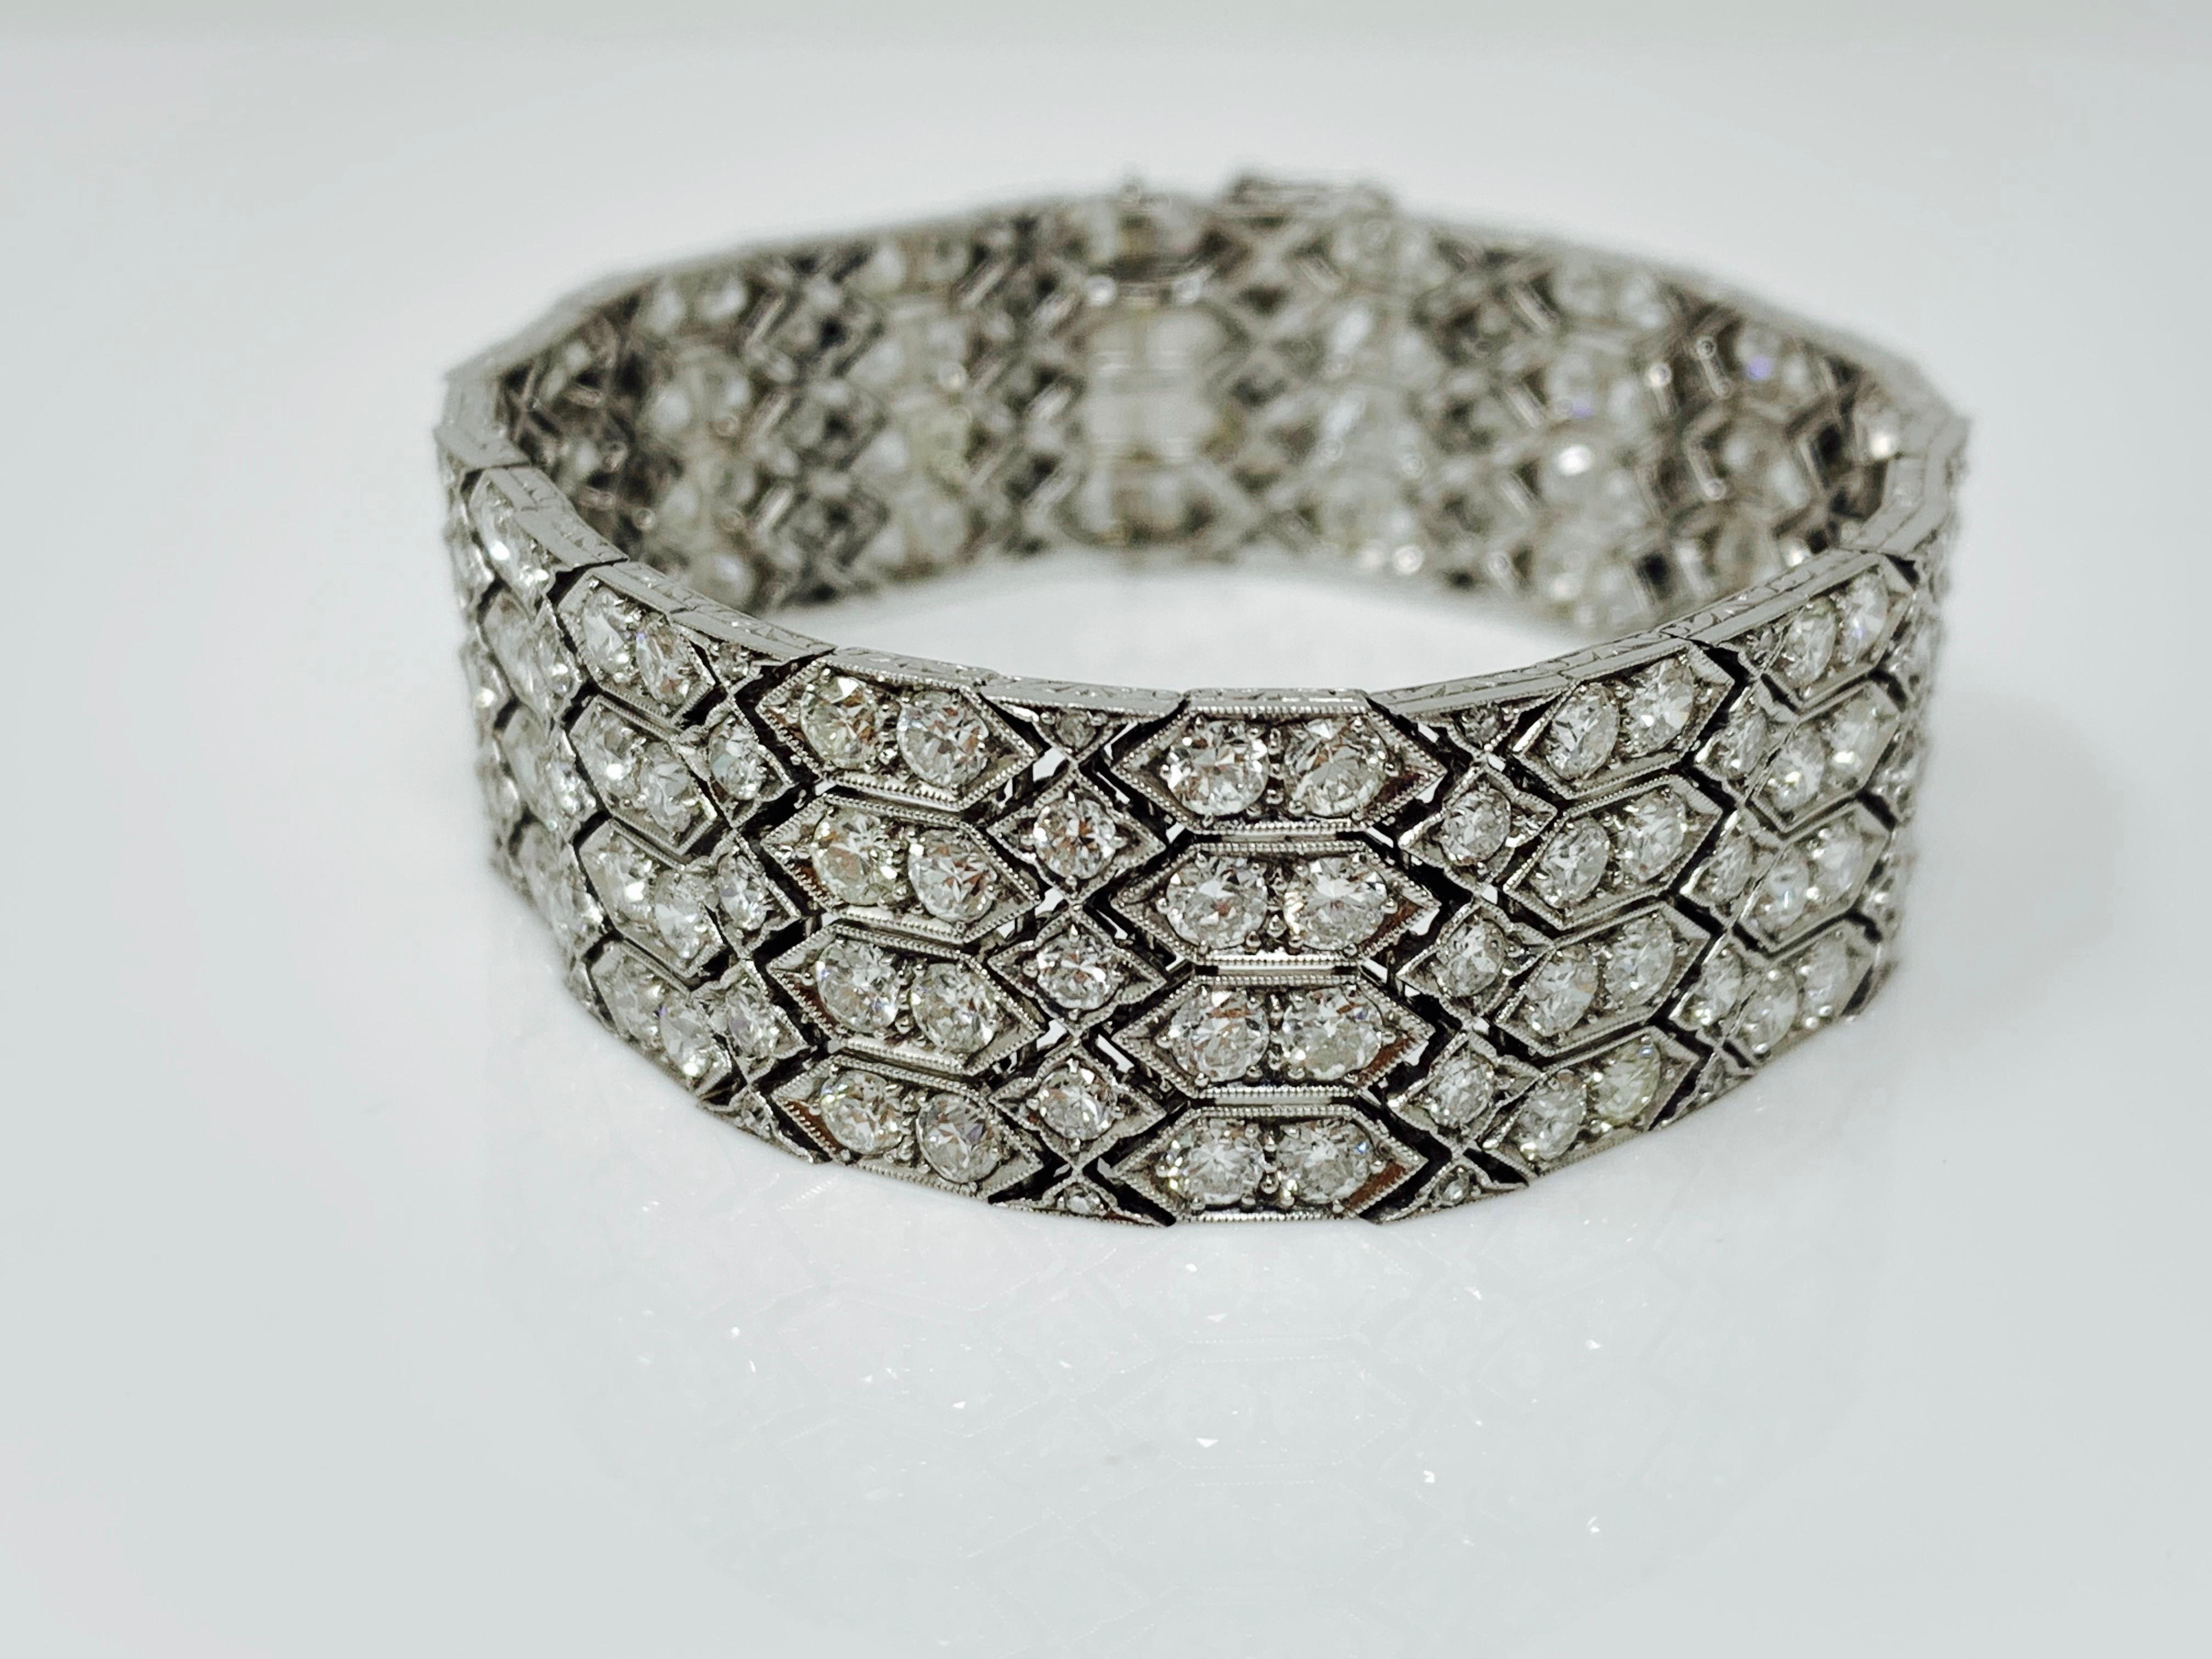 Cet ancien fabuleux bracelet large en diamants blancs, unique en son genre, a été réalisé à la main dans les années 1920. 
Poids du diamant : 24 carats, couleur GH et pureté VS - SI. 
Mesures : 7 pouces de long et 0,75 pouce de large. 

